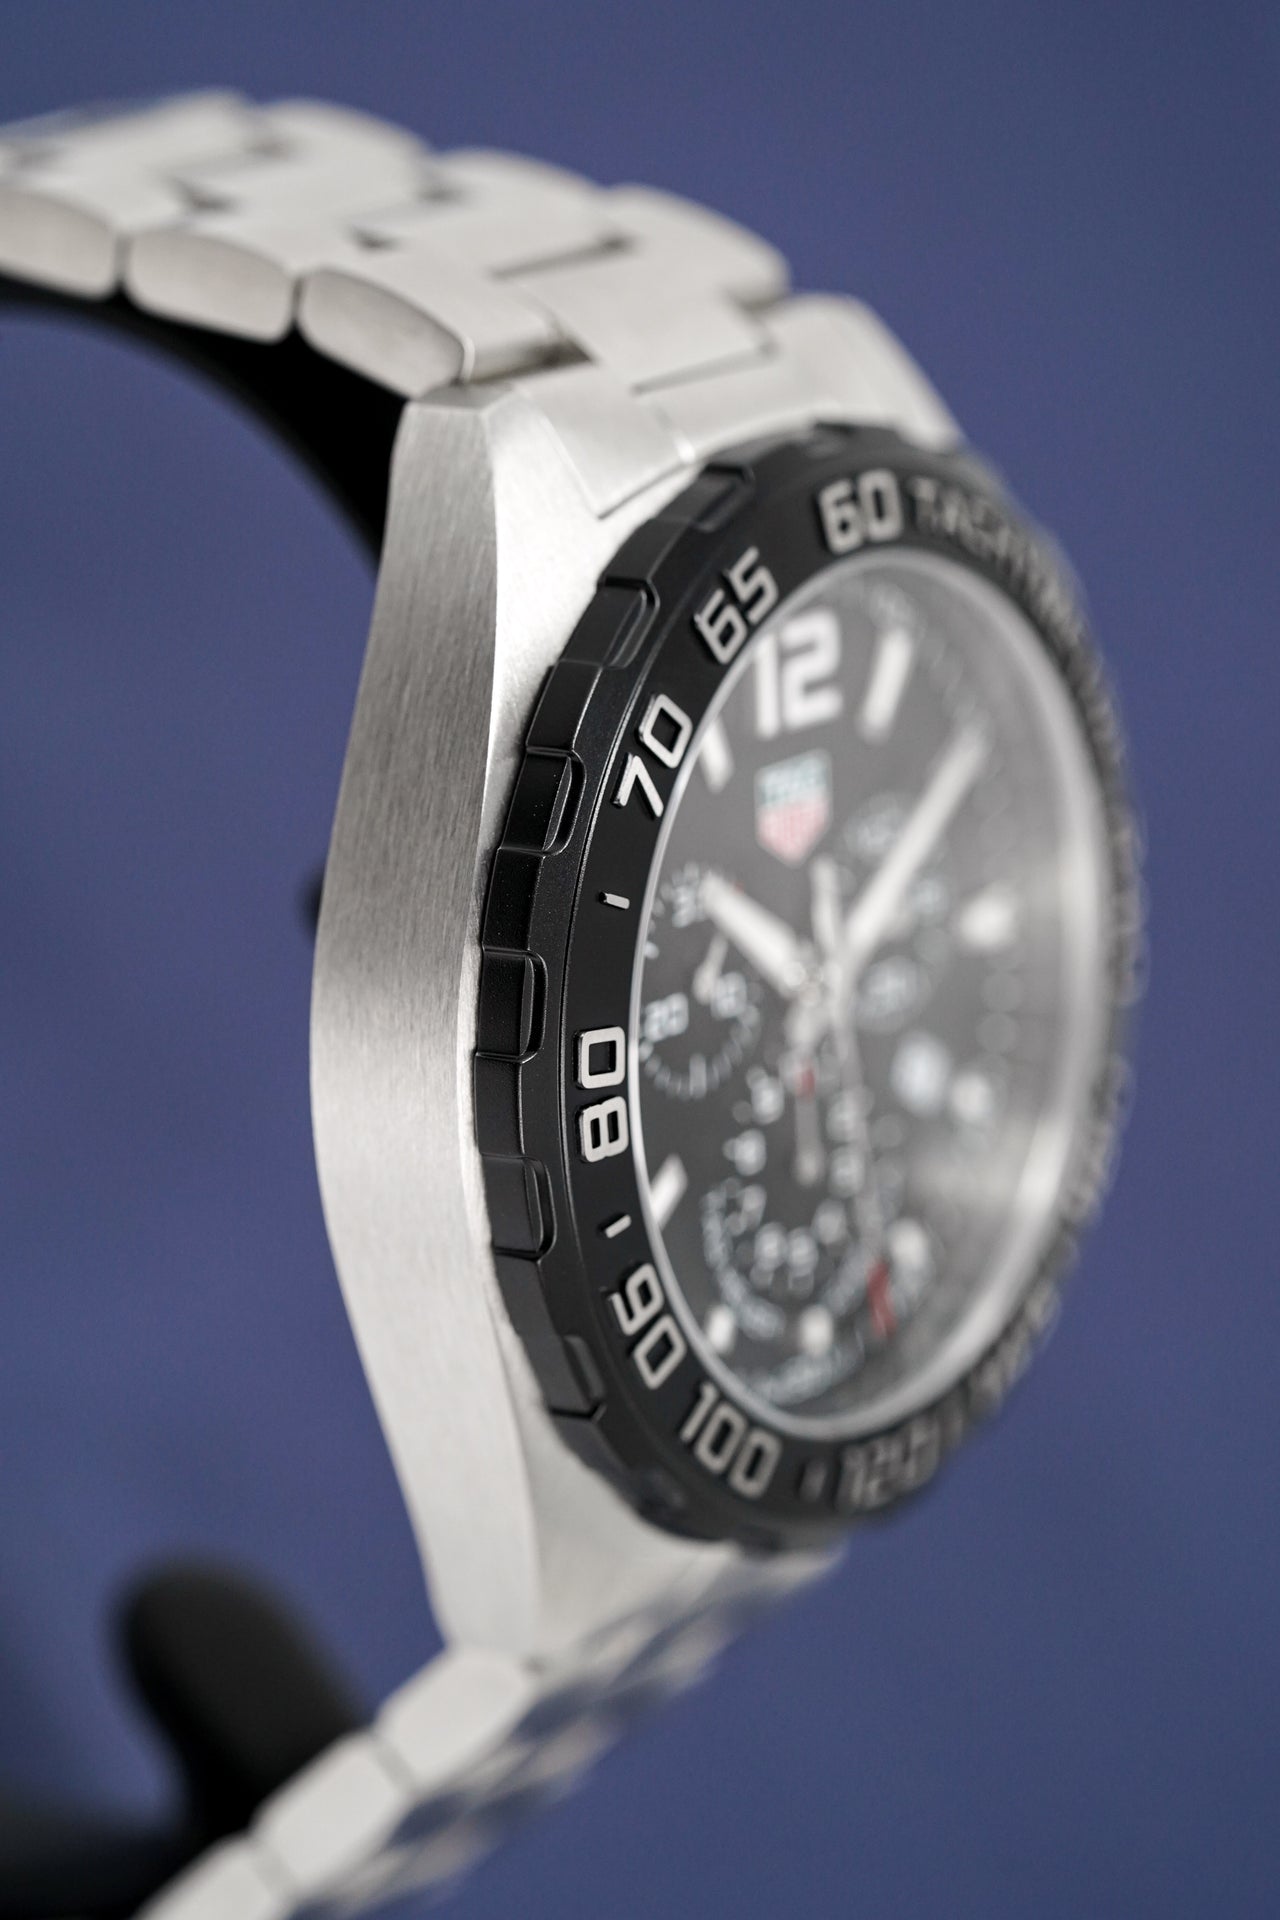 Tag Heuer 'Formula 1' Reloj suizo de cuarzo de vestir de acero inoxidable,  color: plateado, para hombre, modelo: CAZ1010.BA0842